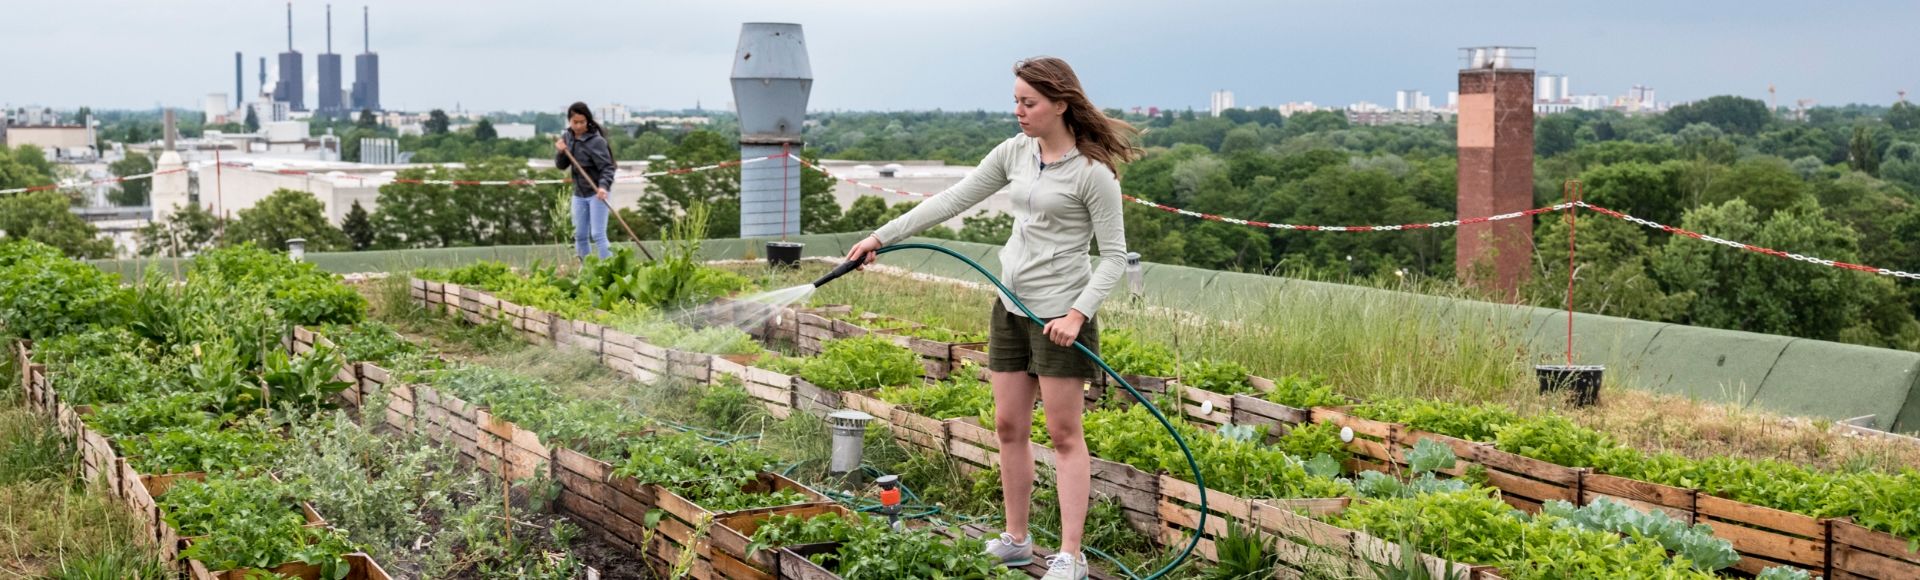 도심 한가운데 자리한 아파트 건물 옥상에 마련된 도심 농장에서 두 여성이 식물을 돌보고 있습니다.